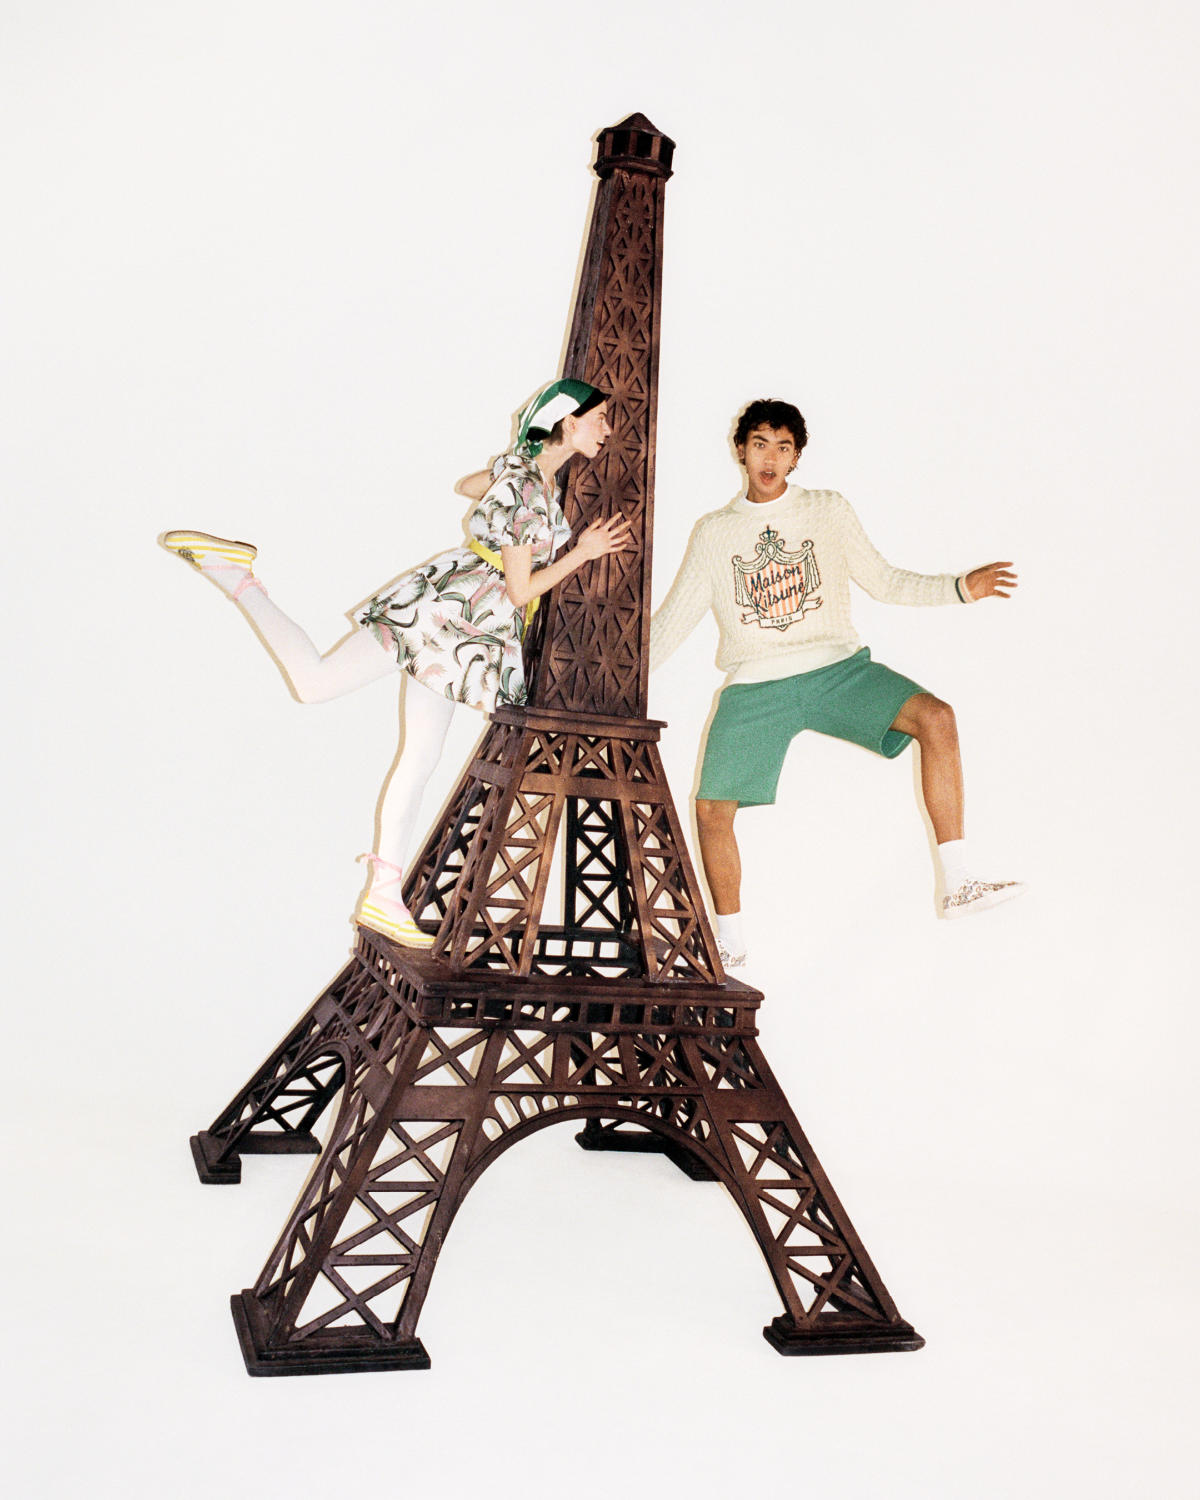 Maison Kitsuné Presents Third Part Of Its Spring-Summer 2023 Campaign: Destination Paris